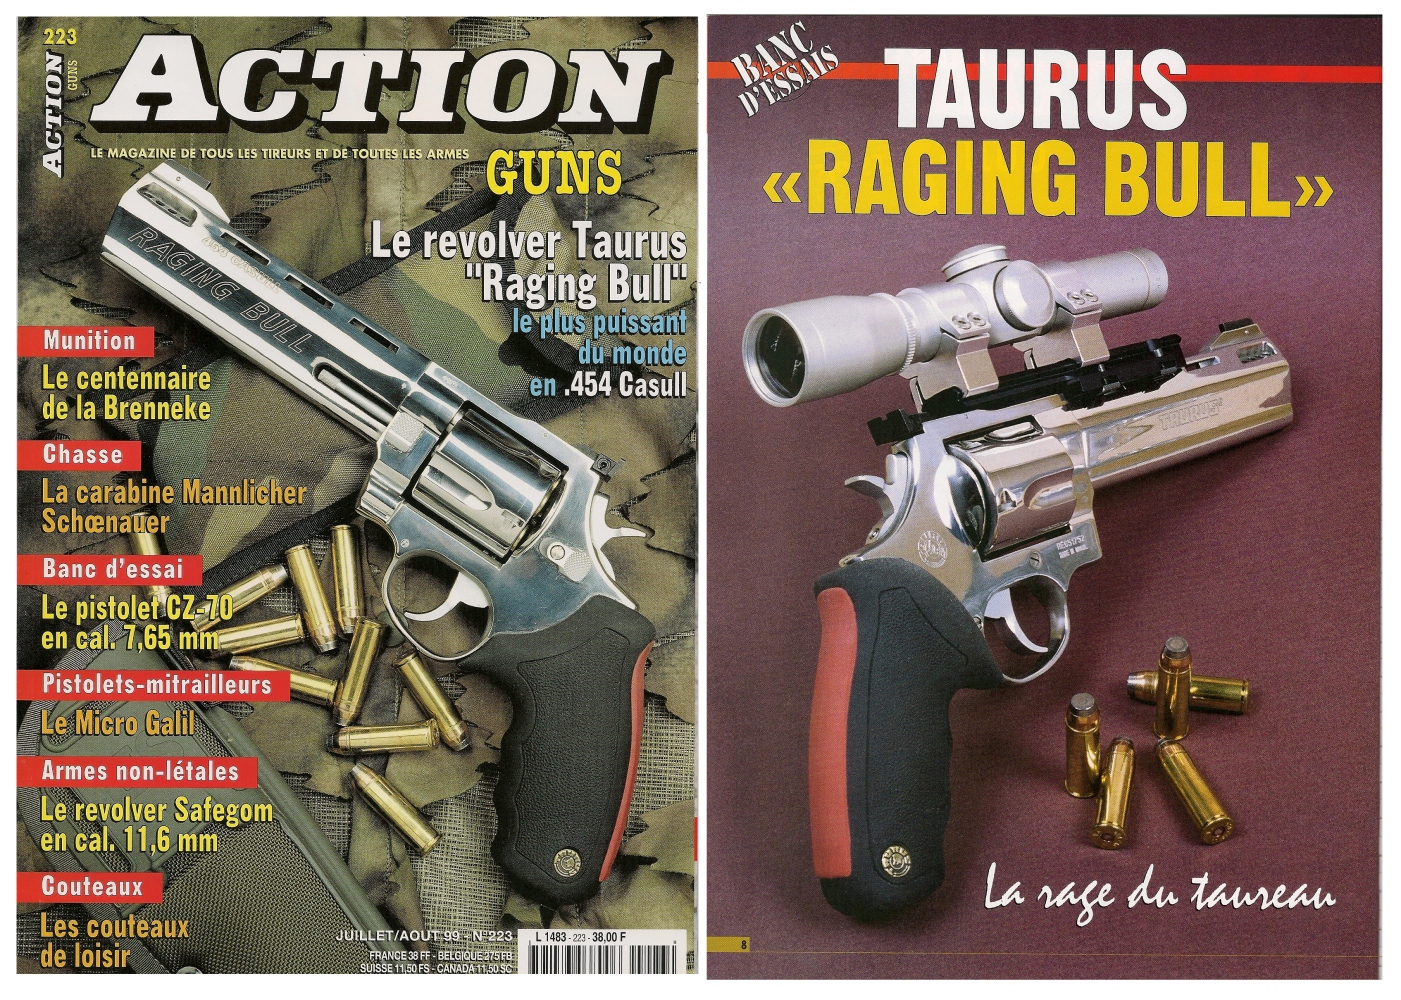 Le banc d’essai du revolver Taurus Raging Bull a été publié sur 7 pages dans le n°223 (juillet/août 1999) du magazine Action Guns. 